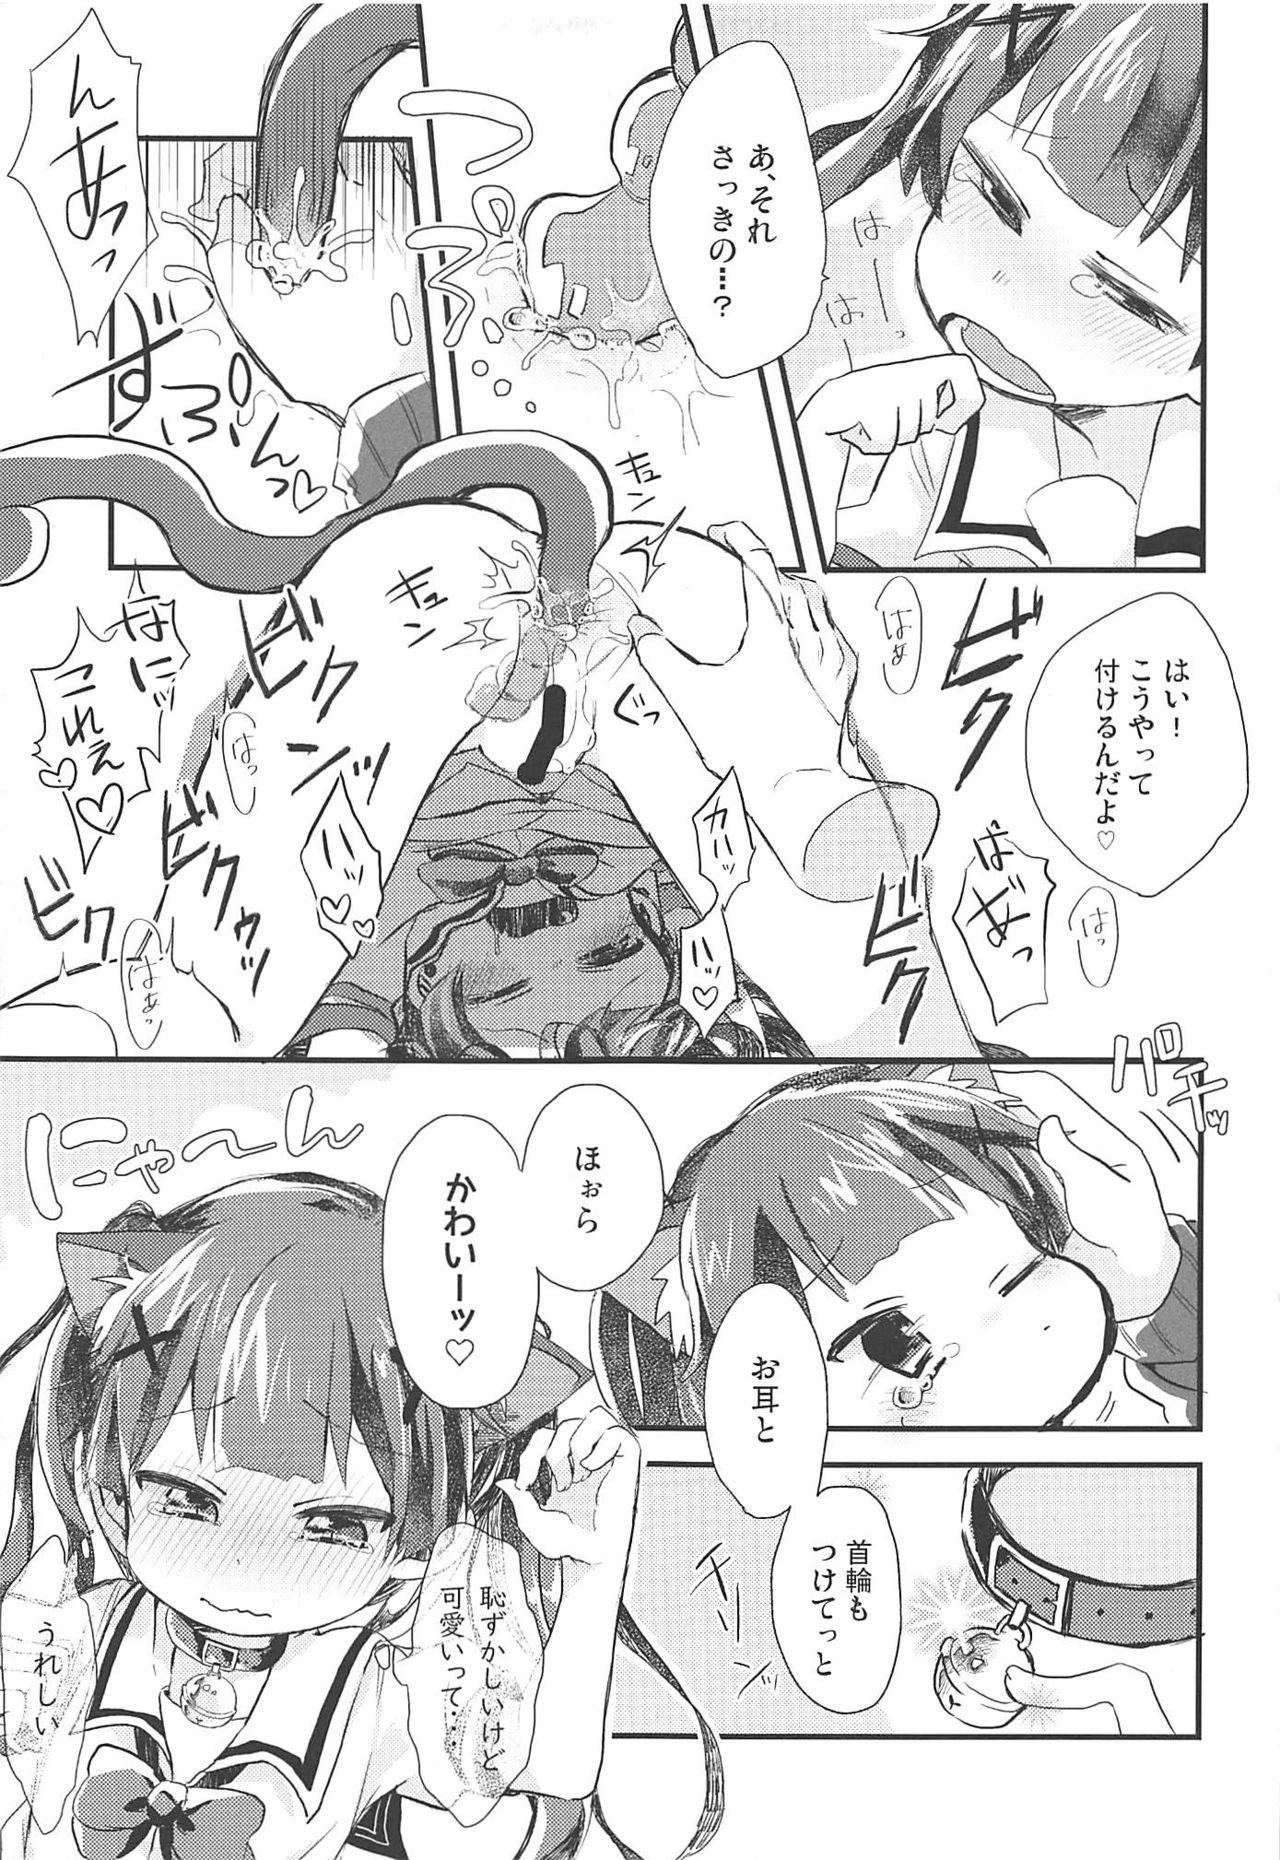 Humiliation Pov Onegai! Koyori-chan - Watashi ni tenshi ga maiorita Club - Page 6